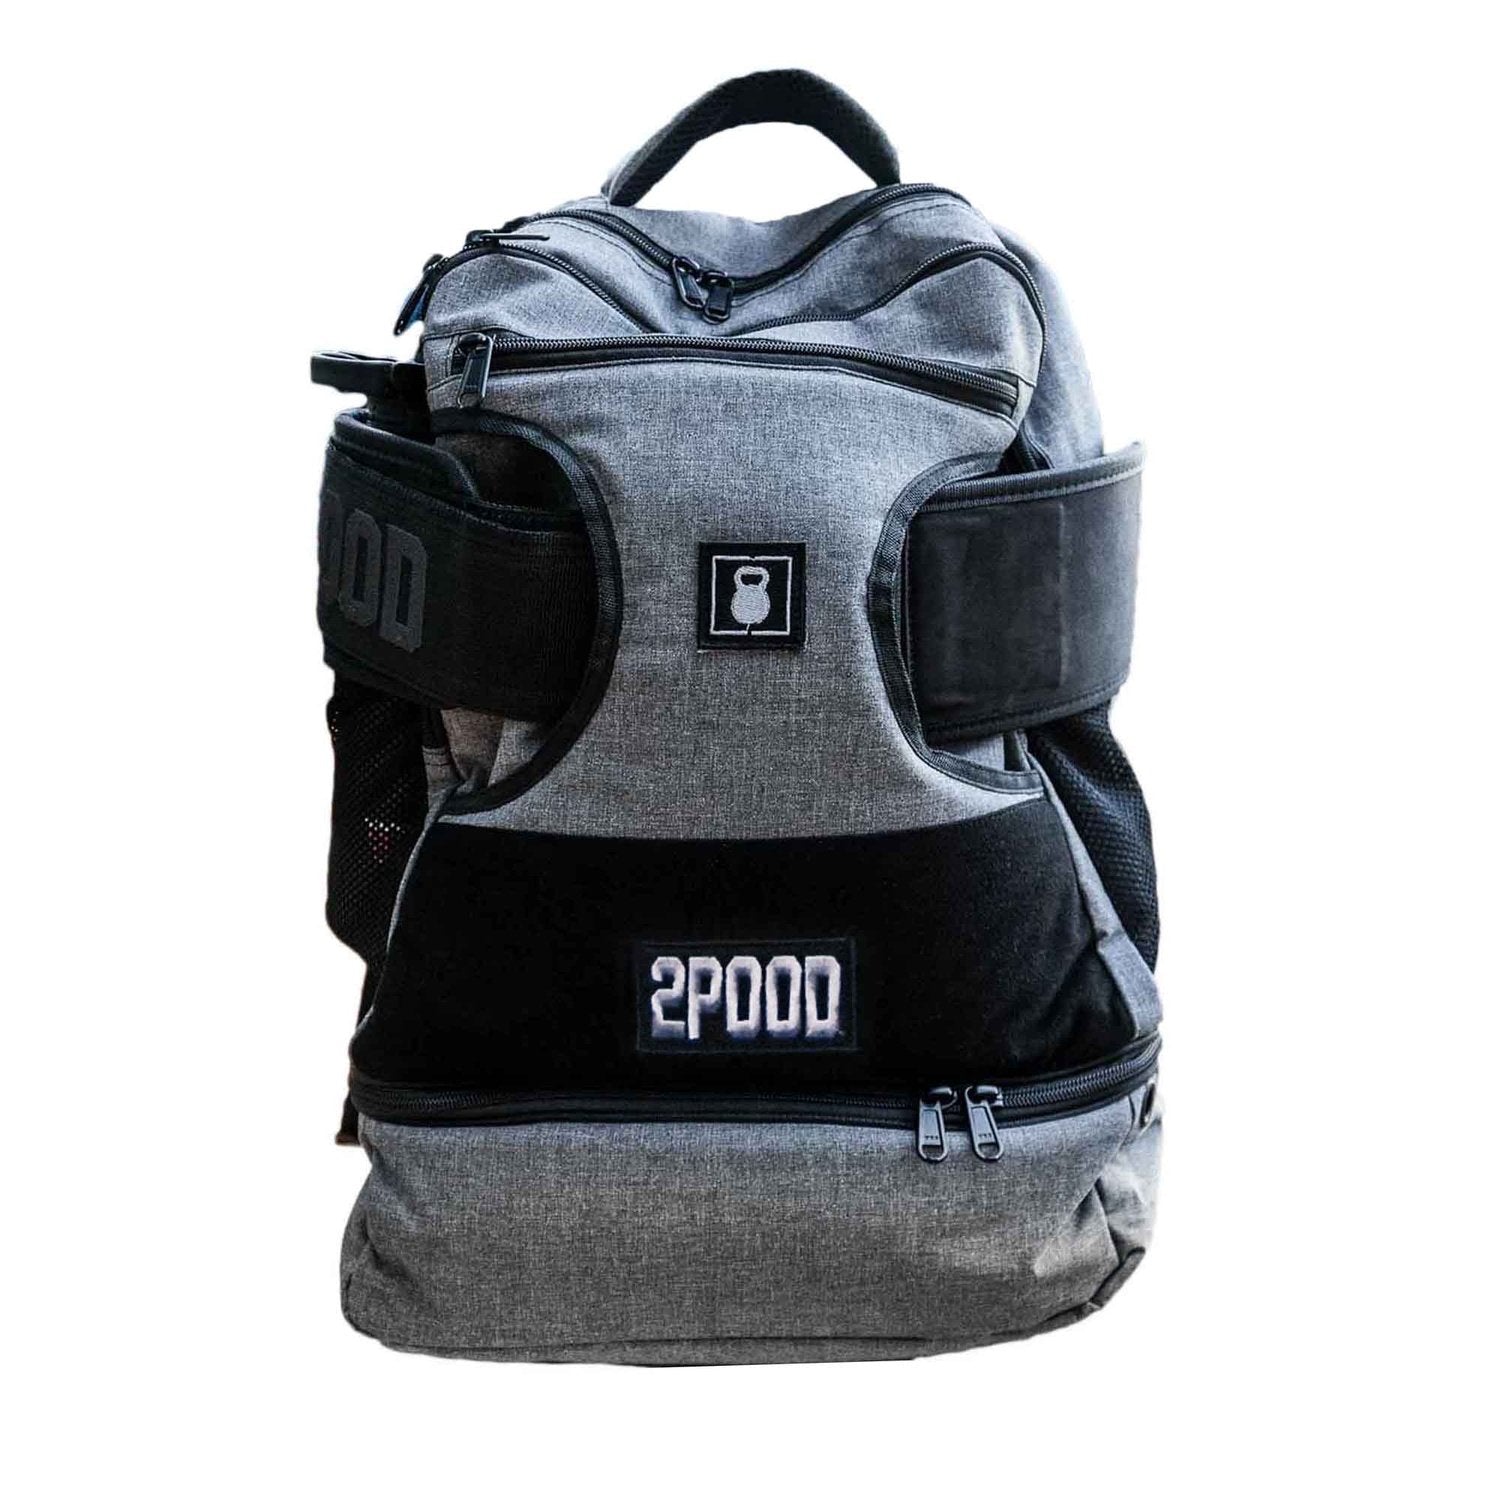 2POOD 2POOD Performance Backpack (Regular) mit Gürtelfach (Auslaufmodell) Grau kaufen bei HighPowered.ch